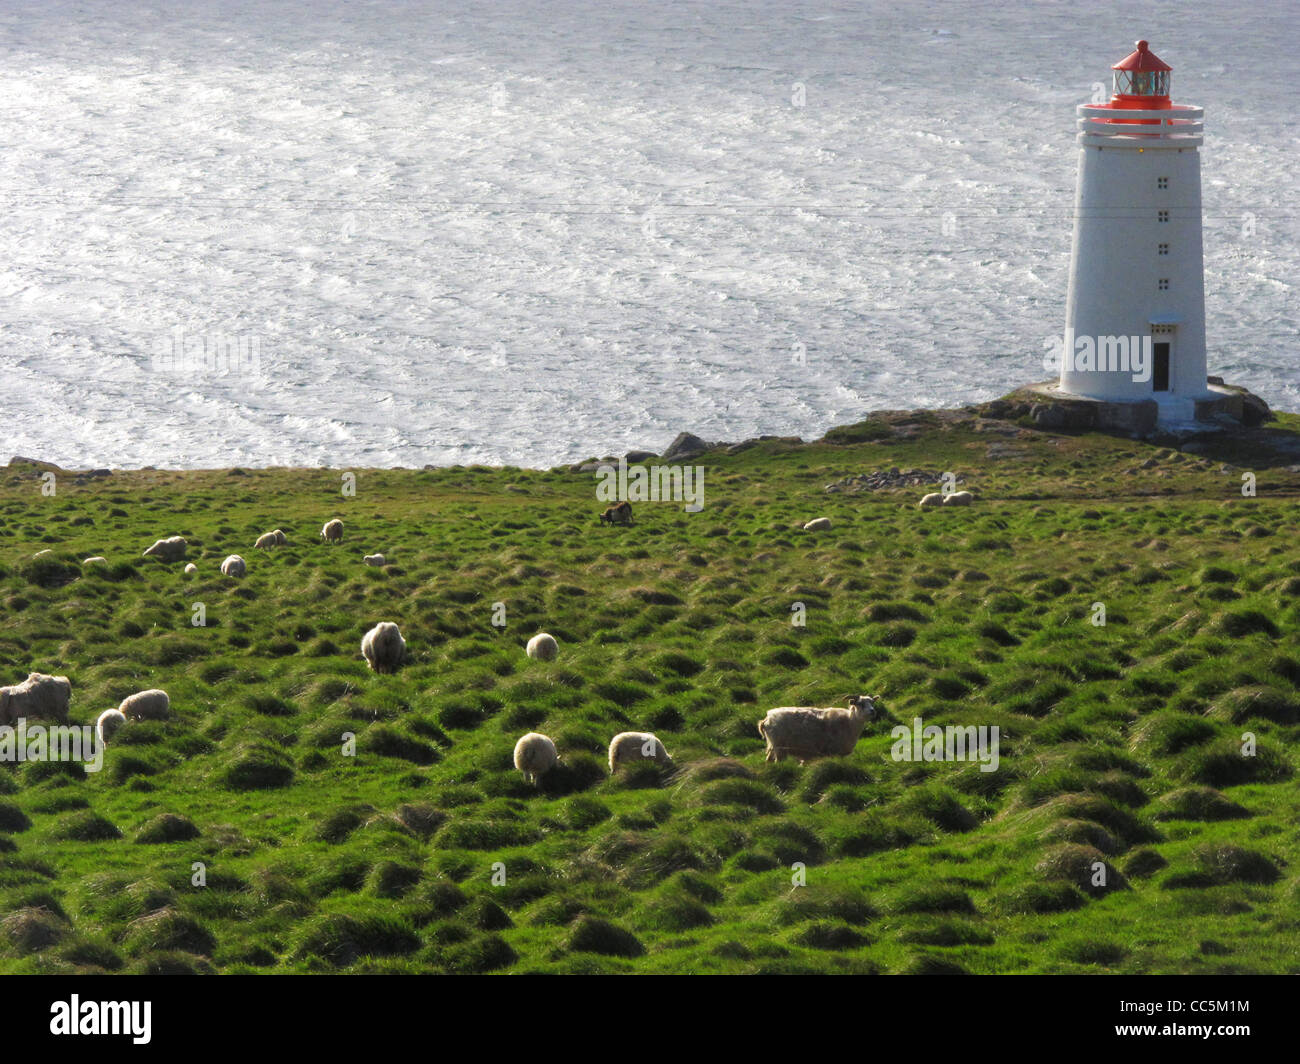 Schafe weiden in den Vordergrund und einem kleinen isländischen Leuchtturm im Hintergrund. Hvammstangi, Vatnsnes Halbinsel, im Norden Islands. Stockfoto